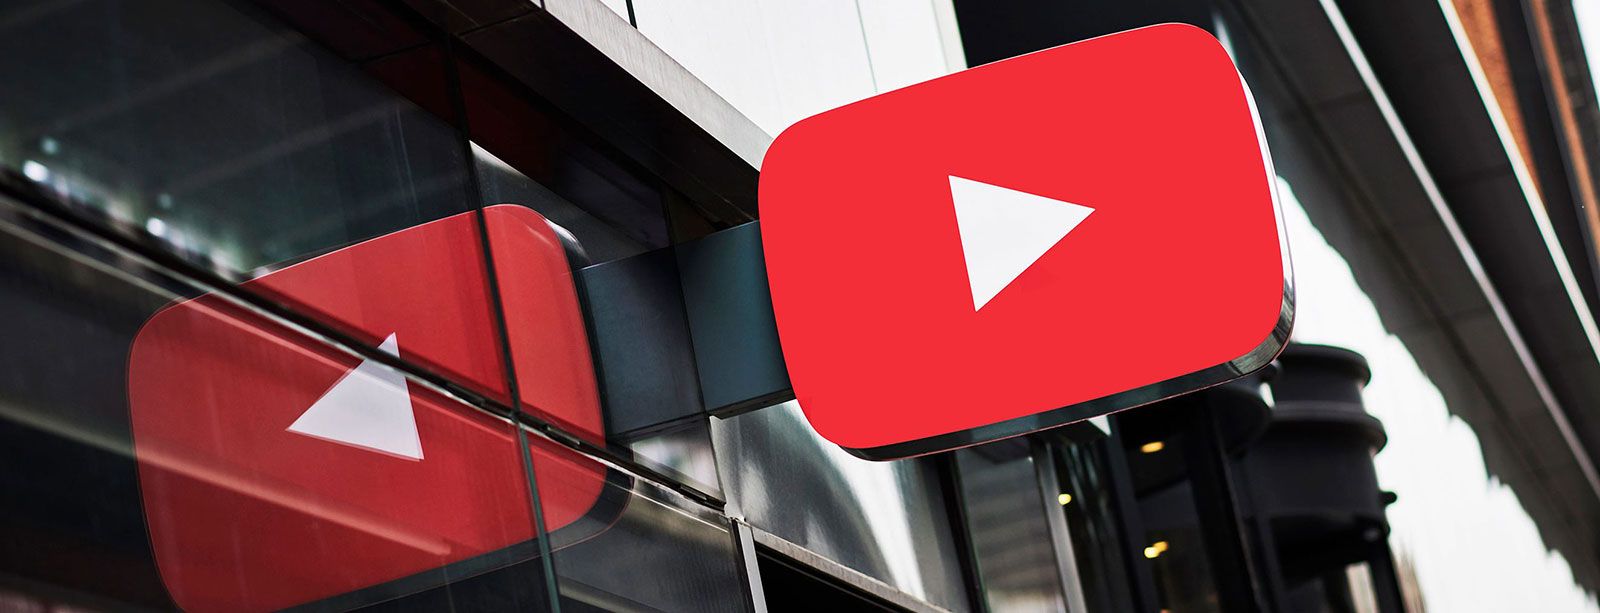 Параметры, влияющие на ранжирование контента в YouTube